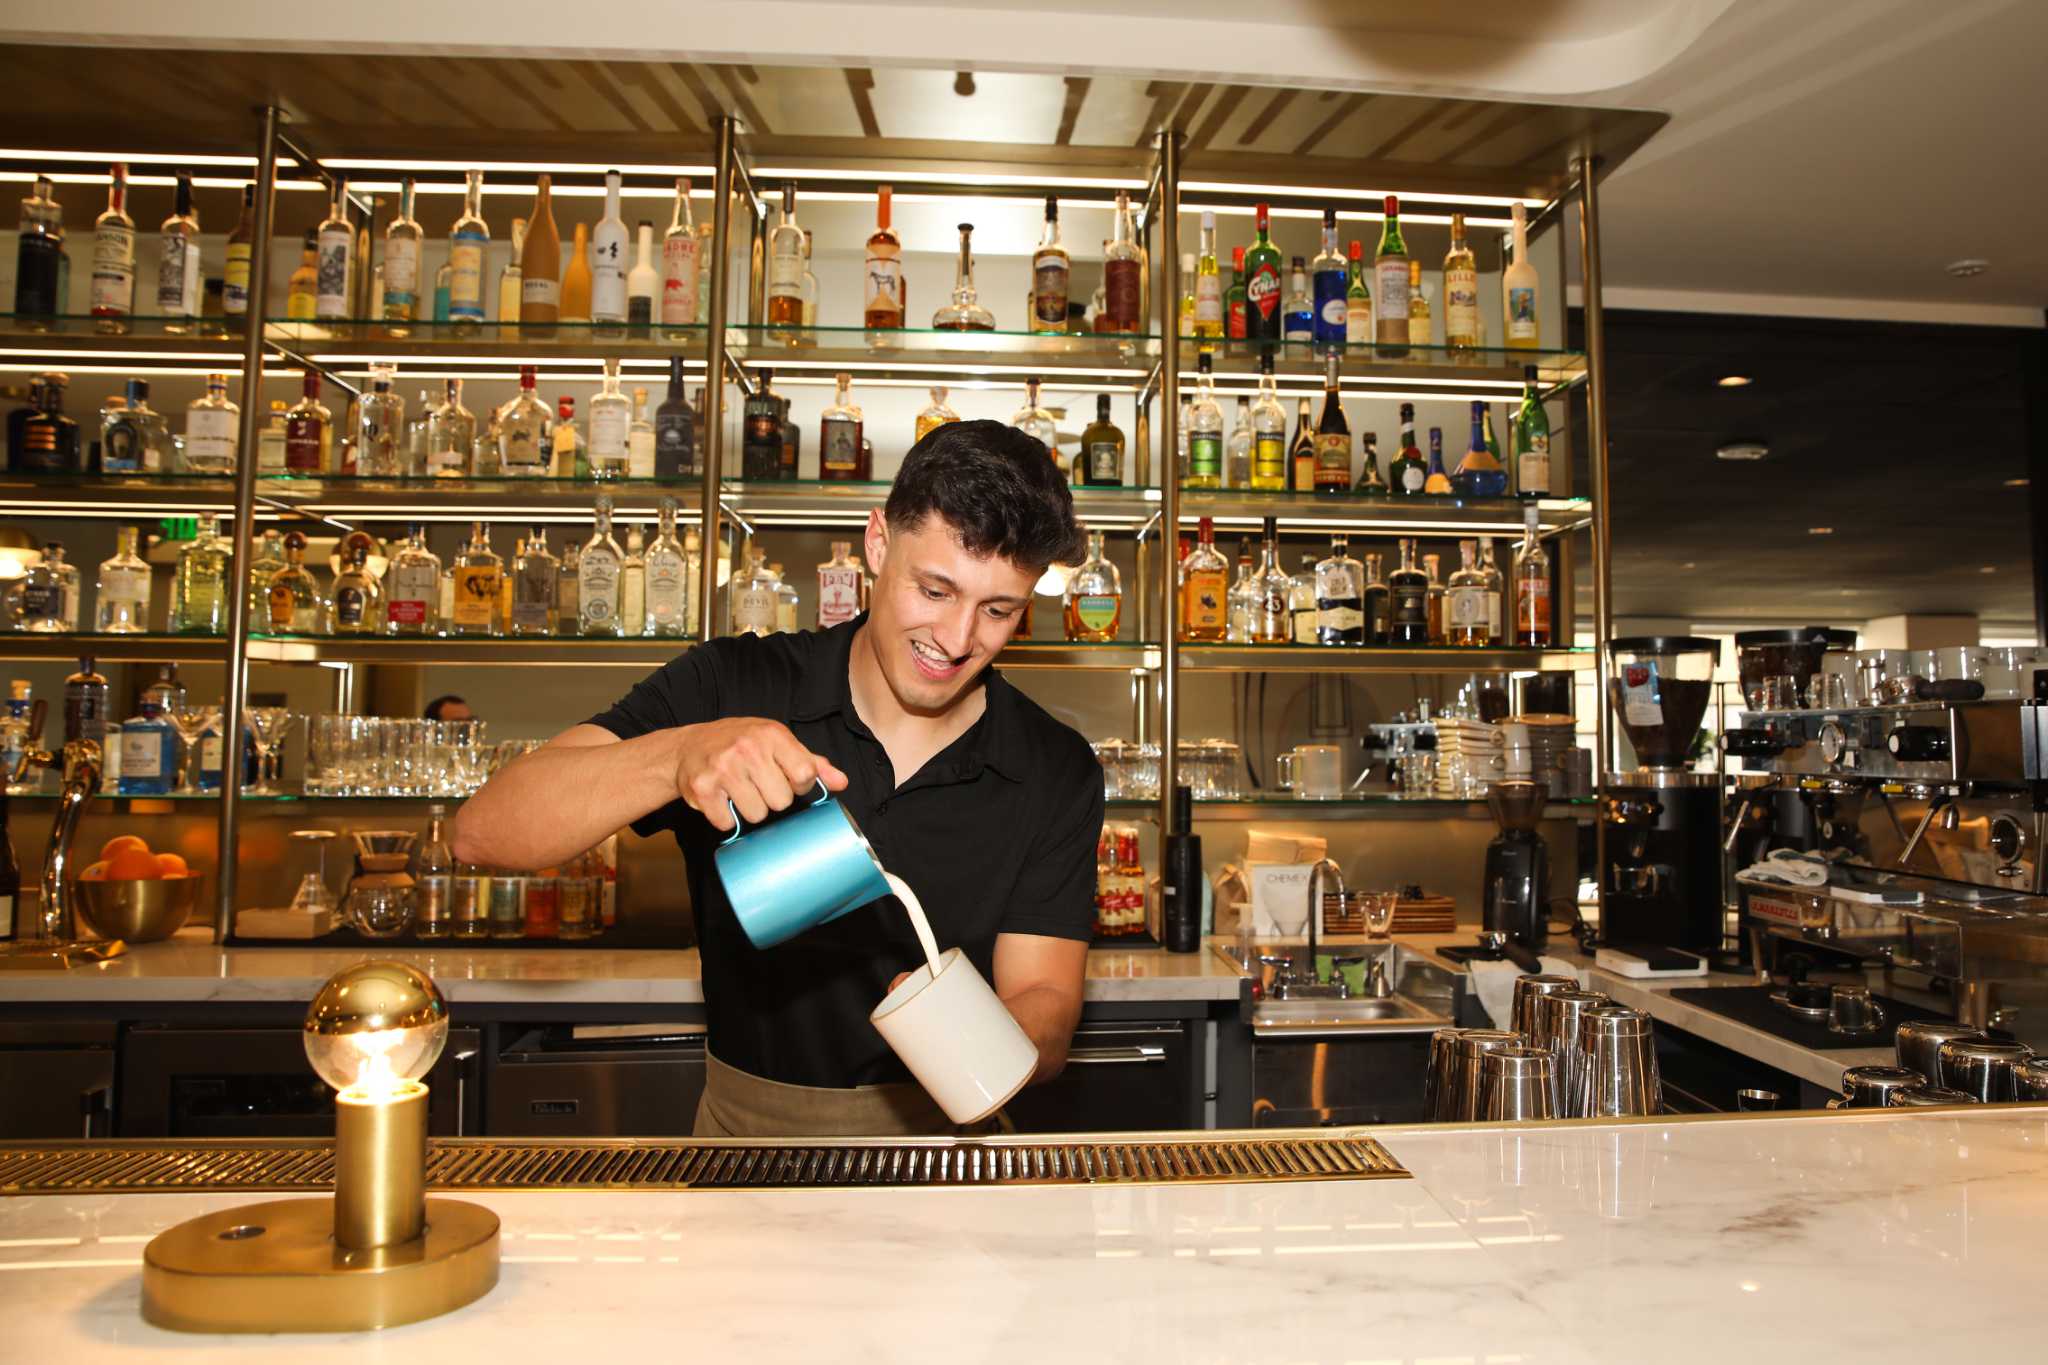 旧金山科技公司酒吧“实验”关门，仅经营6个月